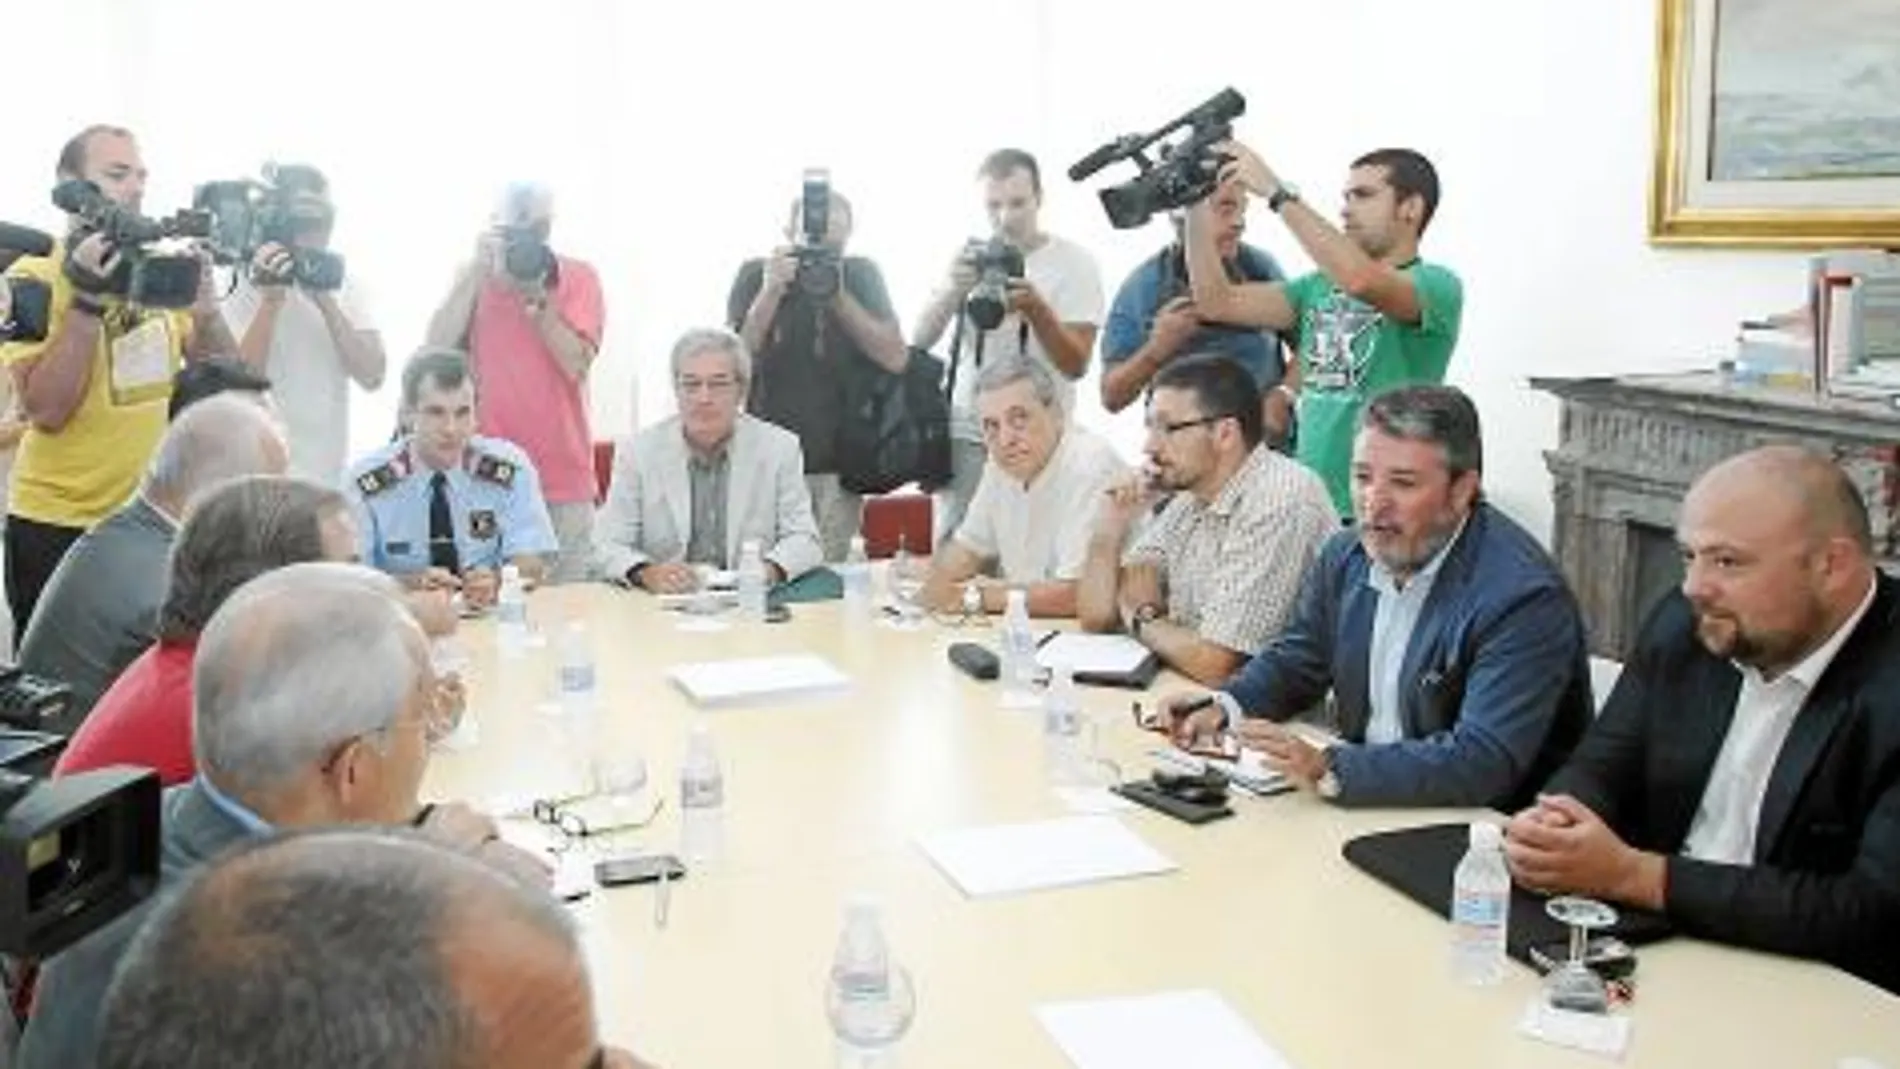 Tras la reunión, los alcaldes se comprometieron a perseguir el top manta a partir del 1 de septiembre